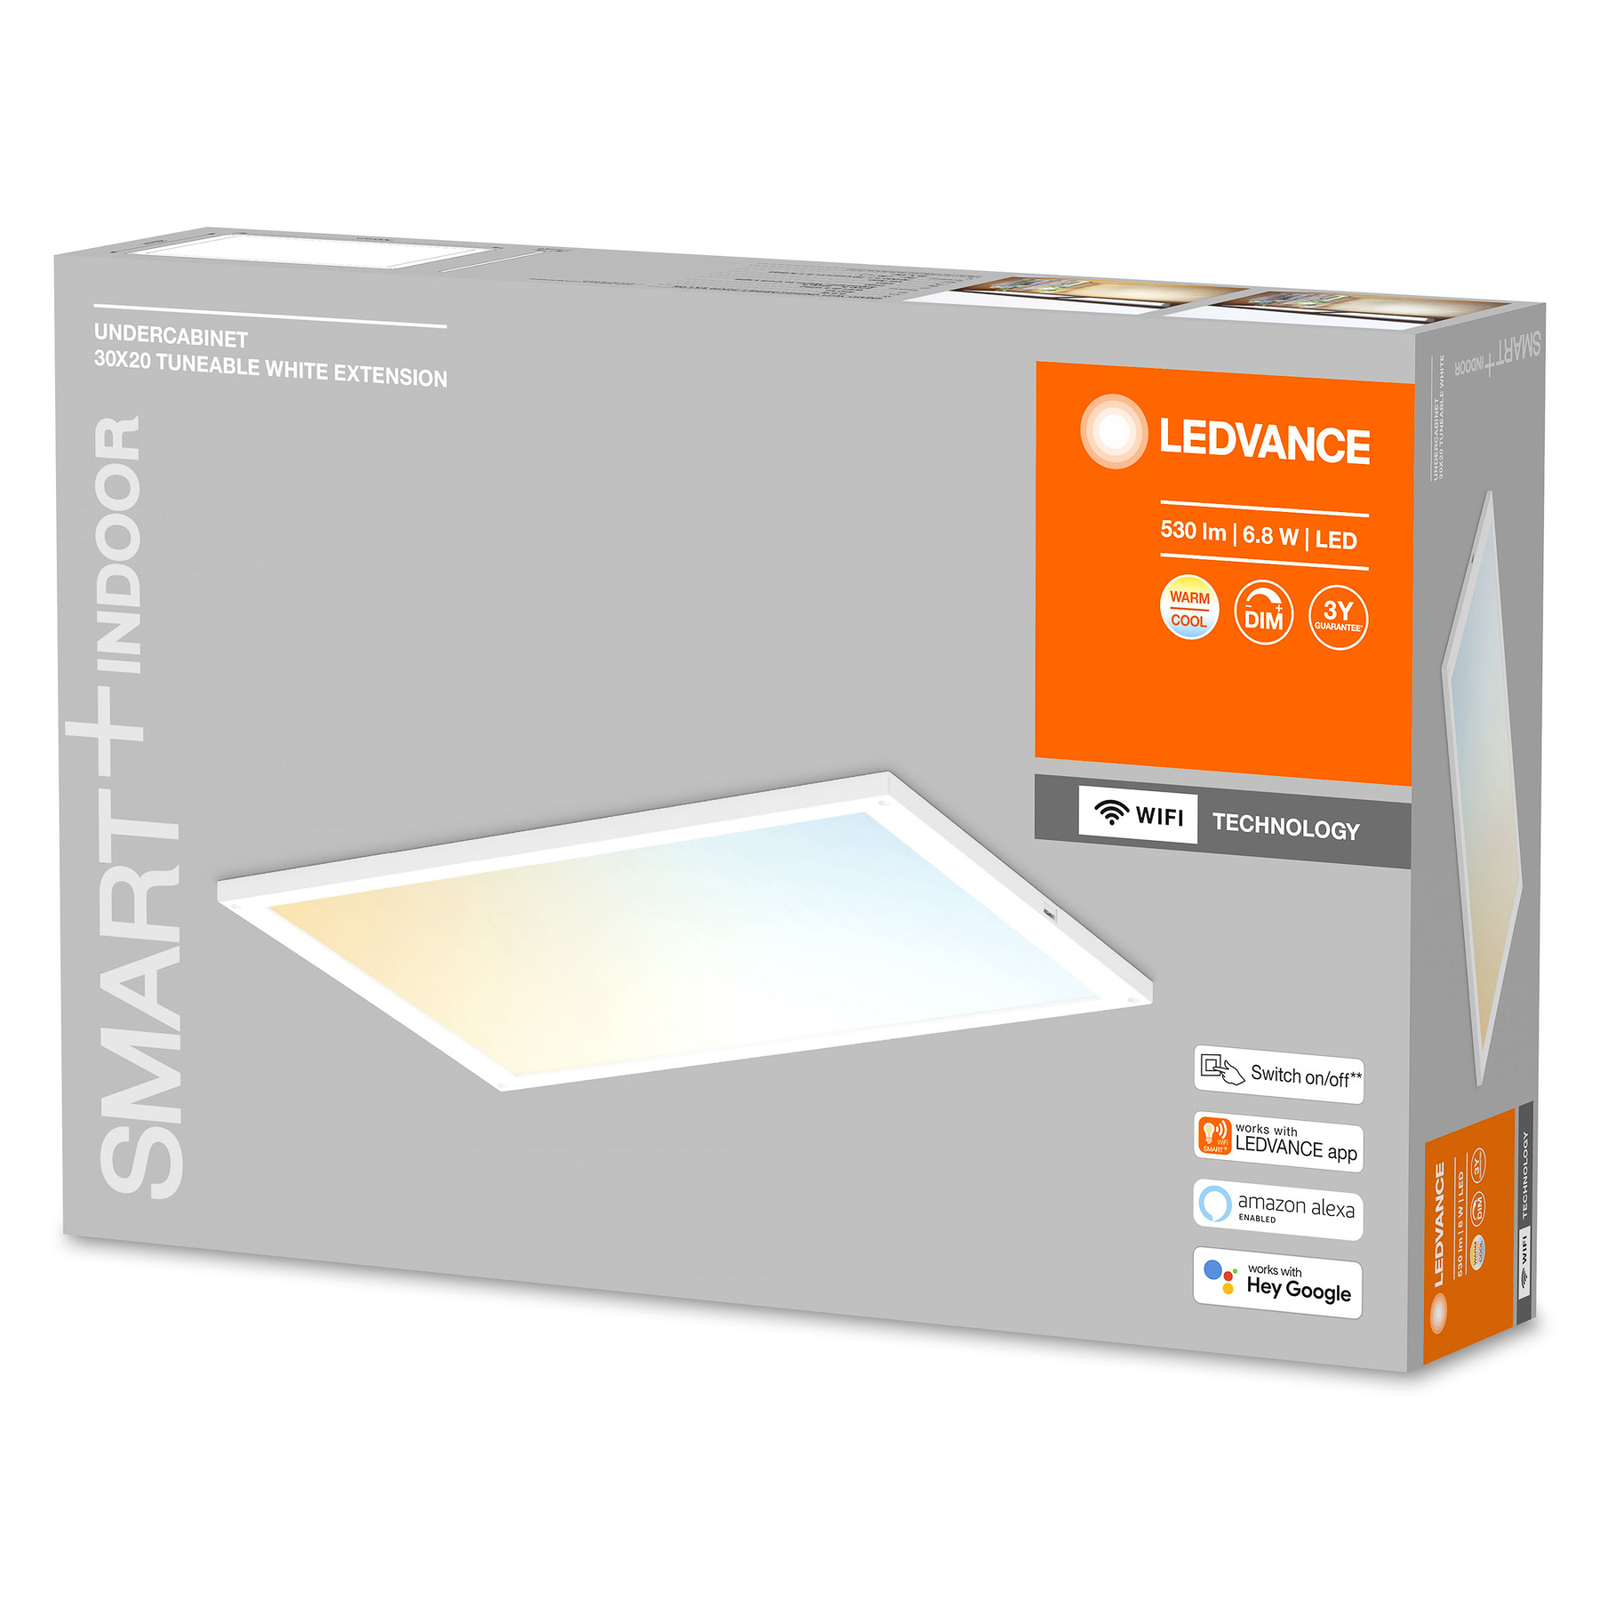 LEDVANCE SMART+ Undercabinet 30x20 przedłużenie